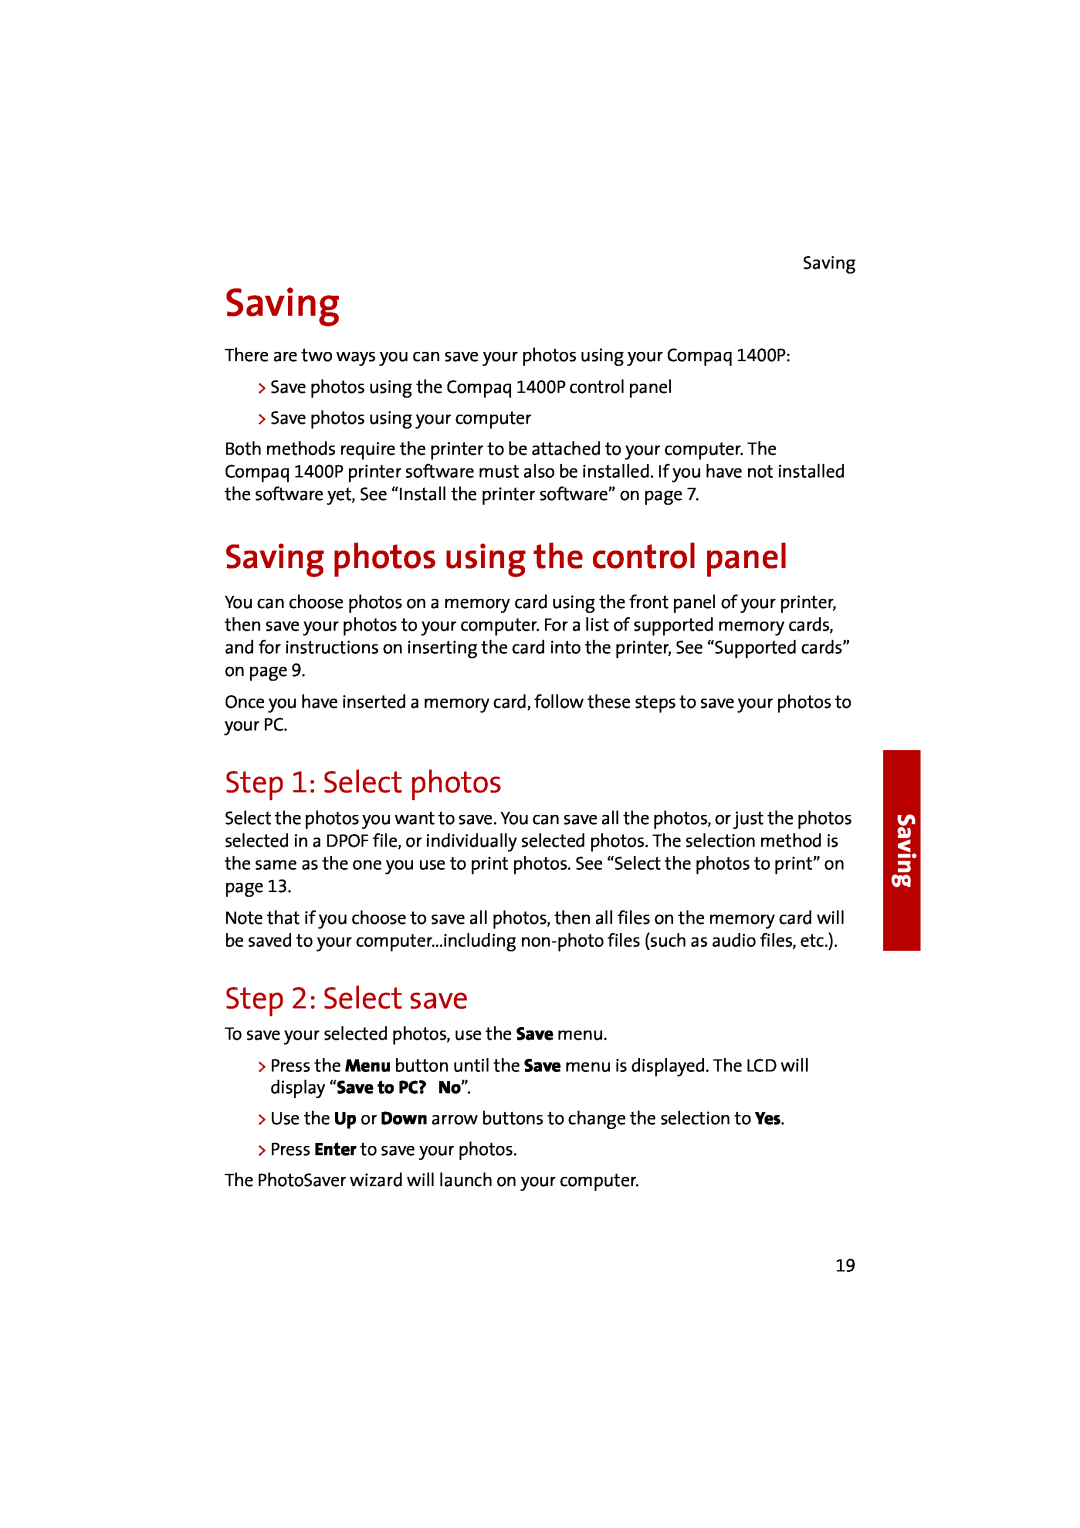 Compaq 1400P manual Saving photos using the control panel, Select photos, Select save 